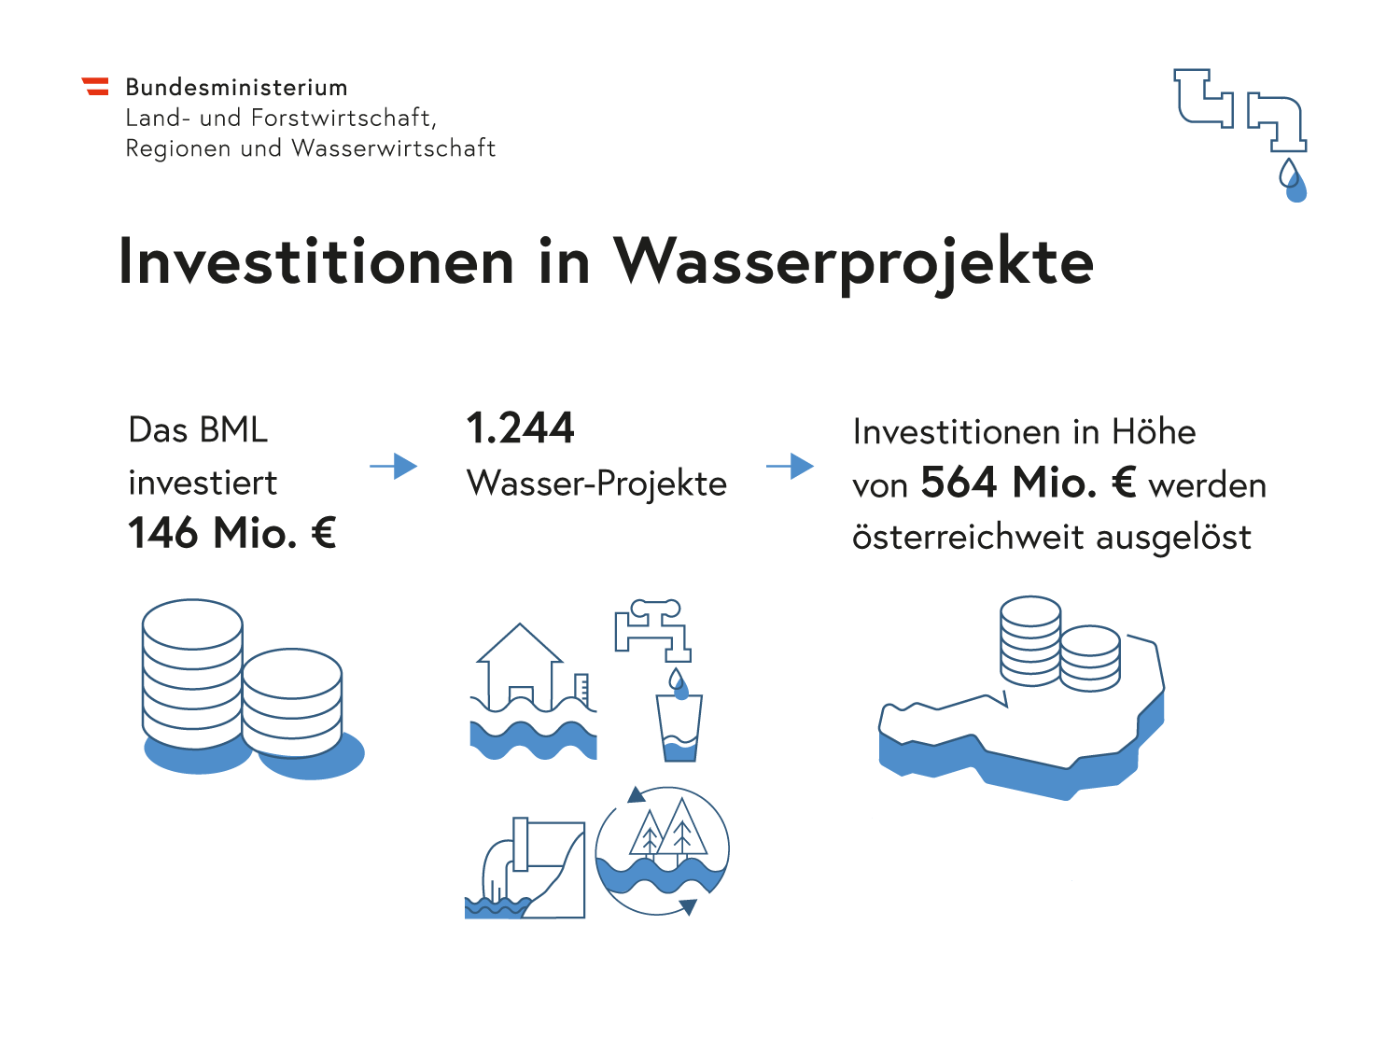 Grafik mit Wort, Zahlen und Abbildungen zu Investitionen in Wasserprojekte